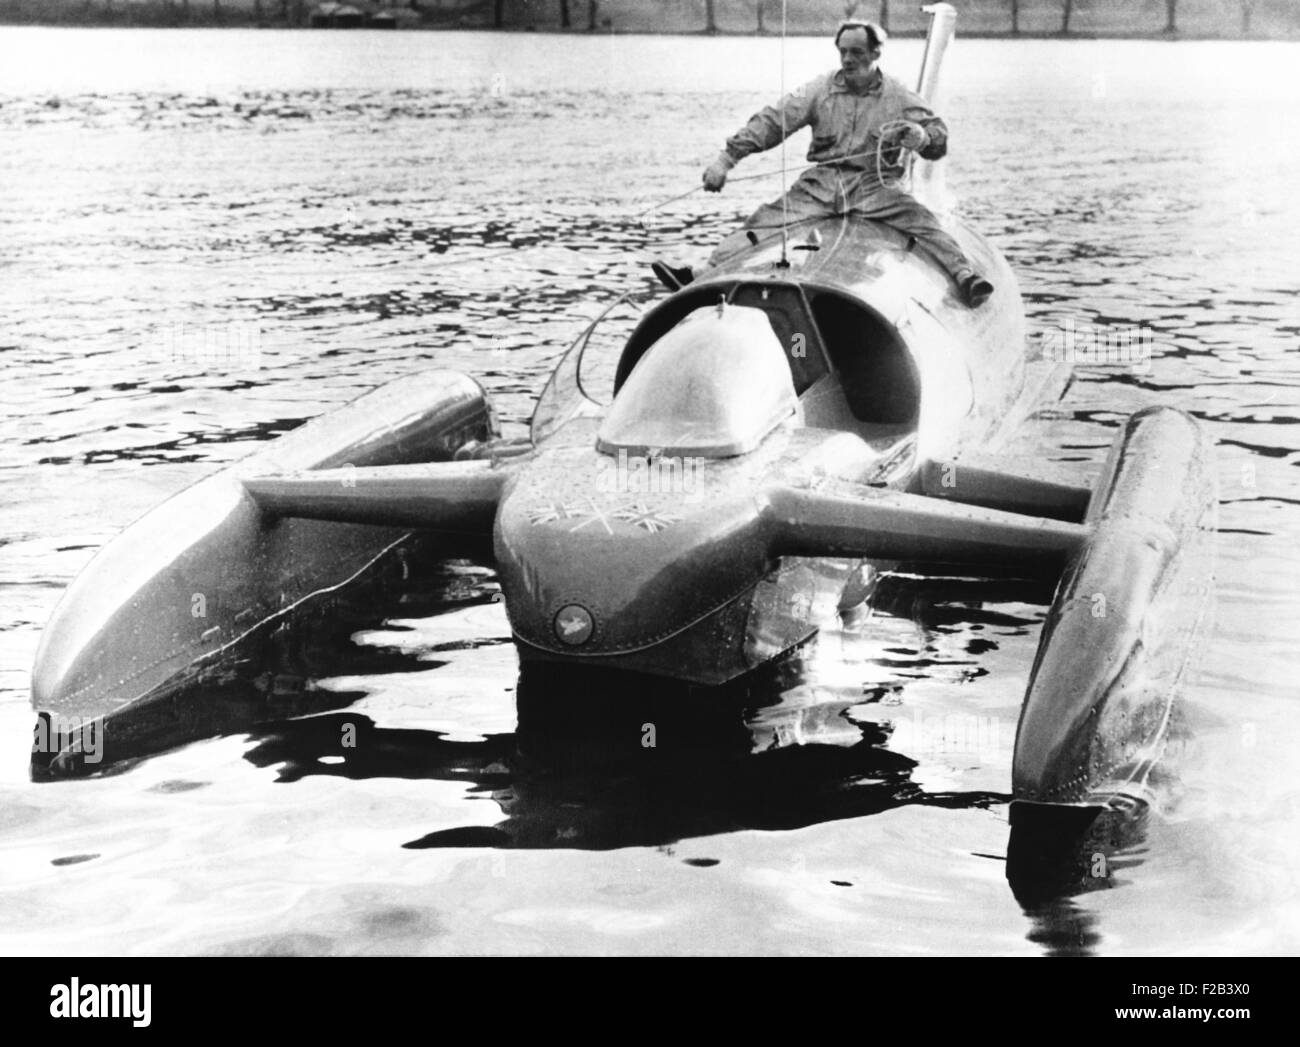 Donald Campbell à califourchon sur son bateau jet, Bluebird K7, sur le lac de Coniston. Il va tenter de briser ses deux ans record de vitesse de l'eau 276,33 mph. 22 novembre 1962 - (CSU 2015 5 18) Banque D'Images